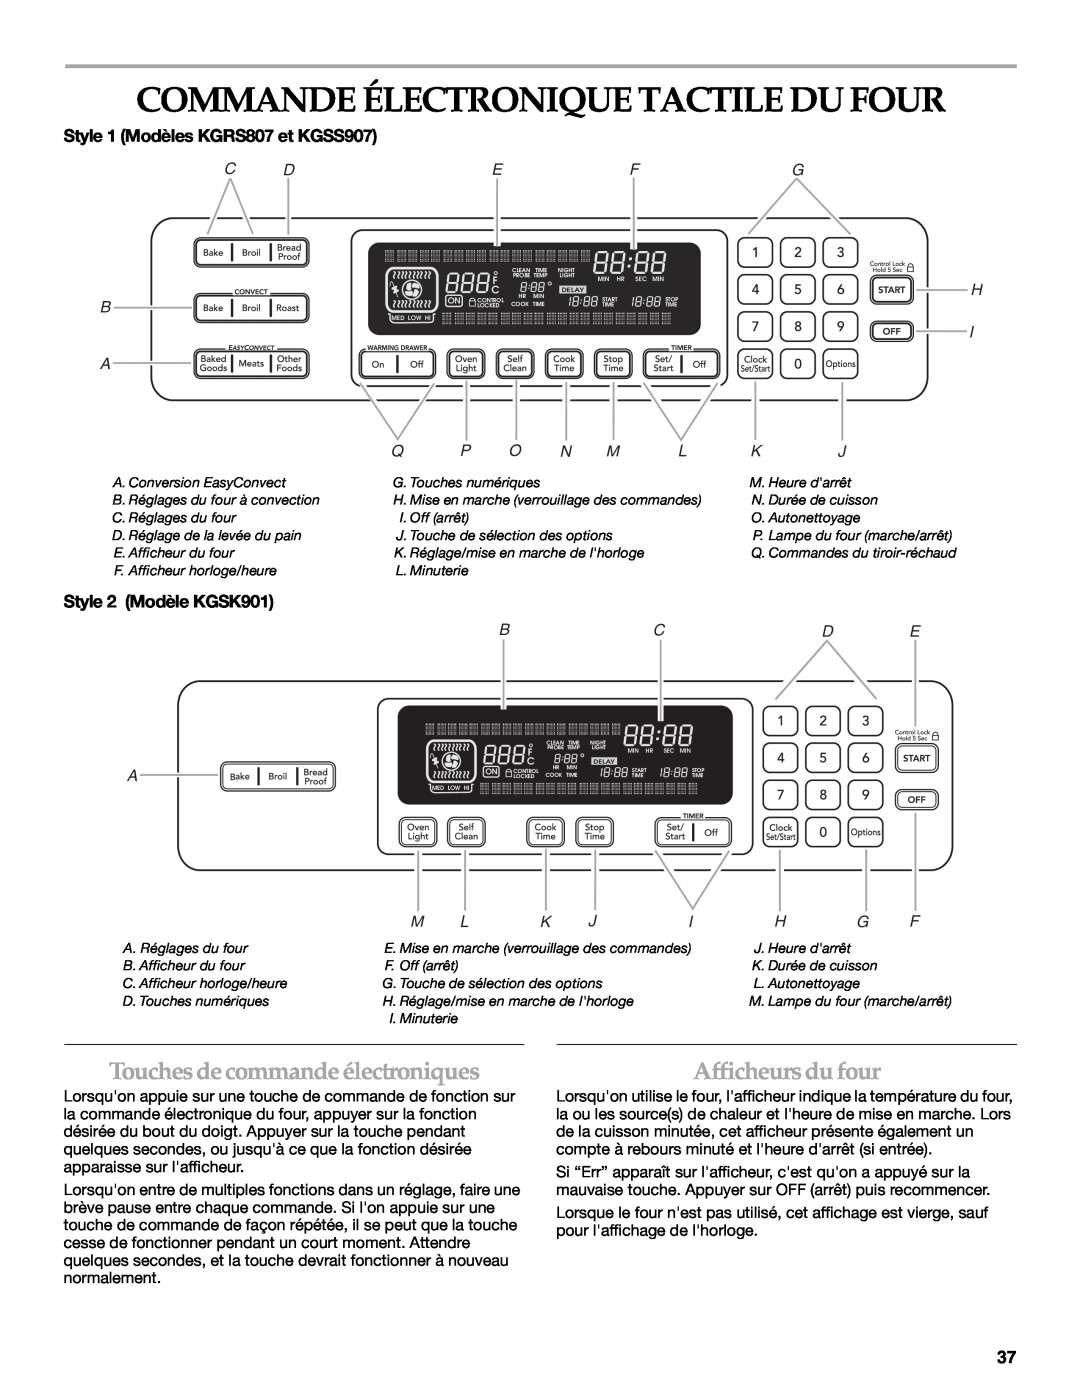 KitchenAid KGRS807 Commande Électronique Tactile Du Four, Touches de commande électroniques, Afficheurs du four, C B A 